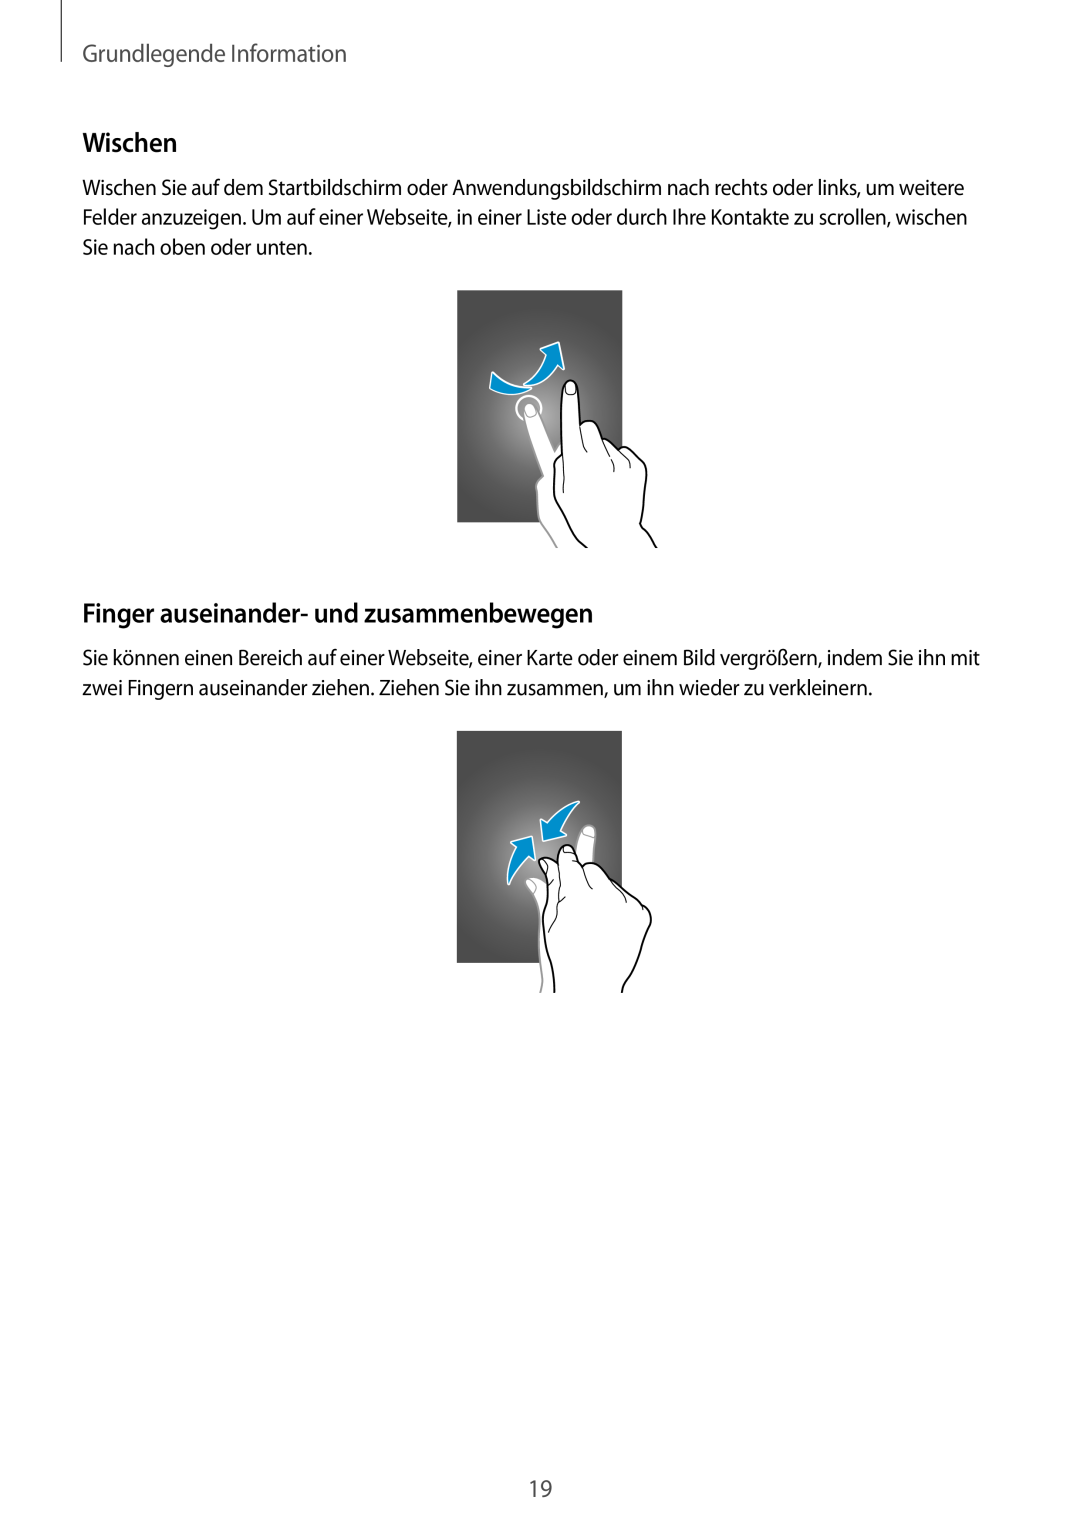 Samsung SM-T2100ZWEATO, SM-T2100ZWAATO manual Wischen, Finger auseinander- und zusammenbewegen, Grundlegende Information 